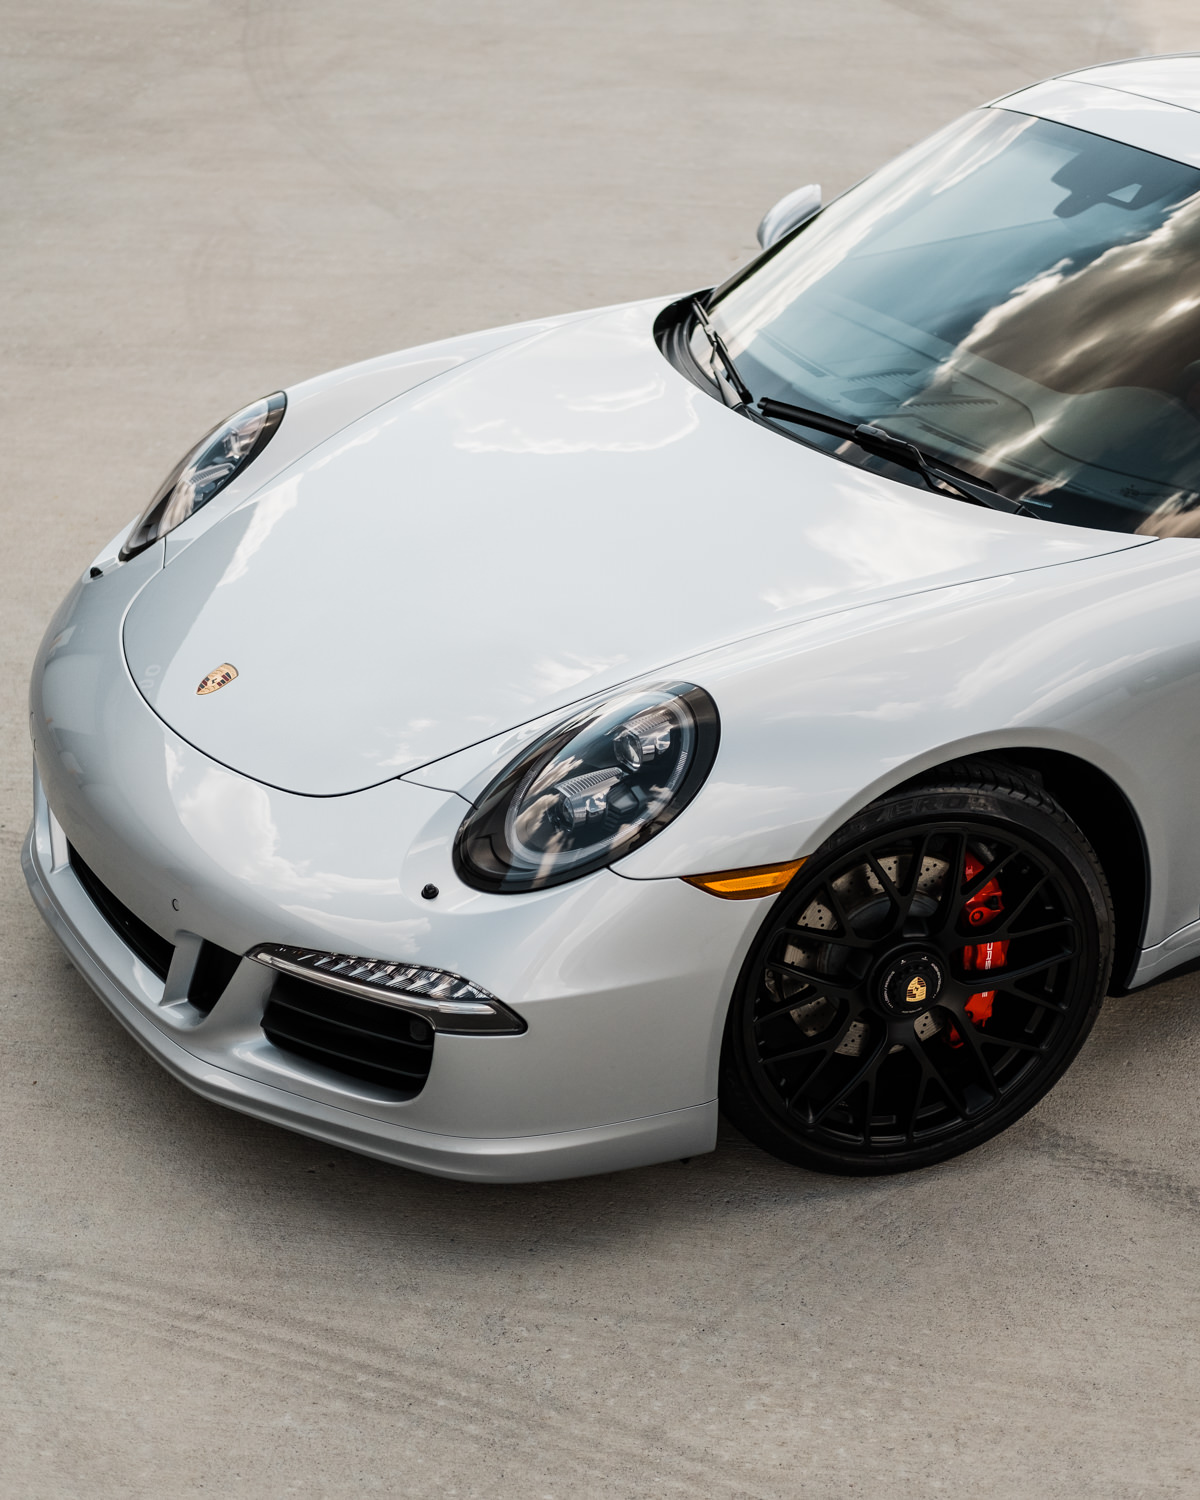 Porsche 911 - Porsche - Wichita Clear Bra - XPEL - XPEL Ultimate - Ceramic Pro - Ceramic Coating - Car Detailing - Porsche 911 GTS-170.jpg